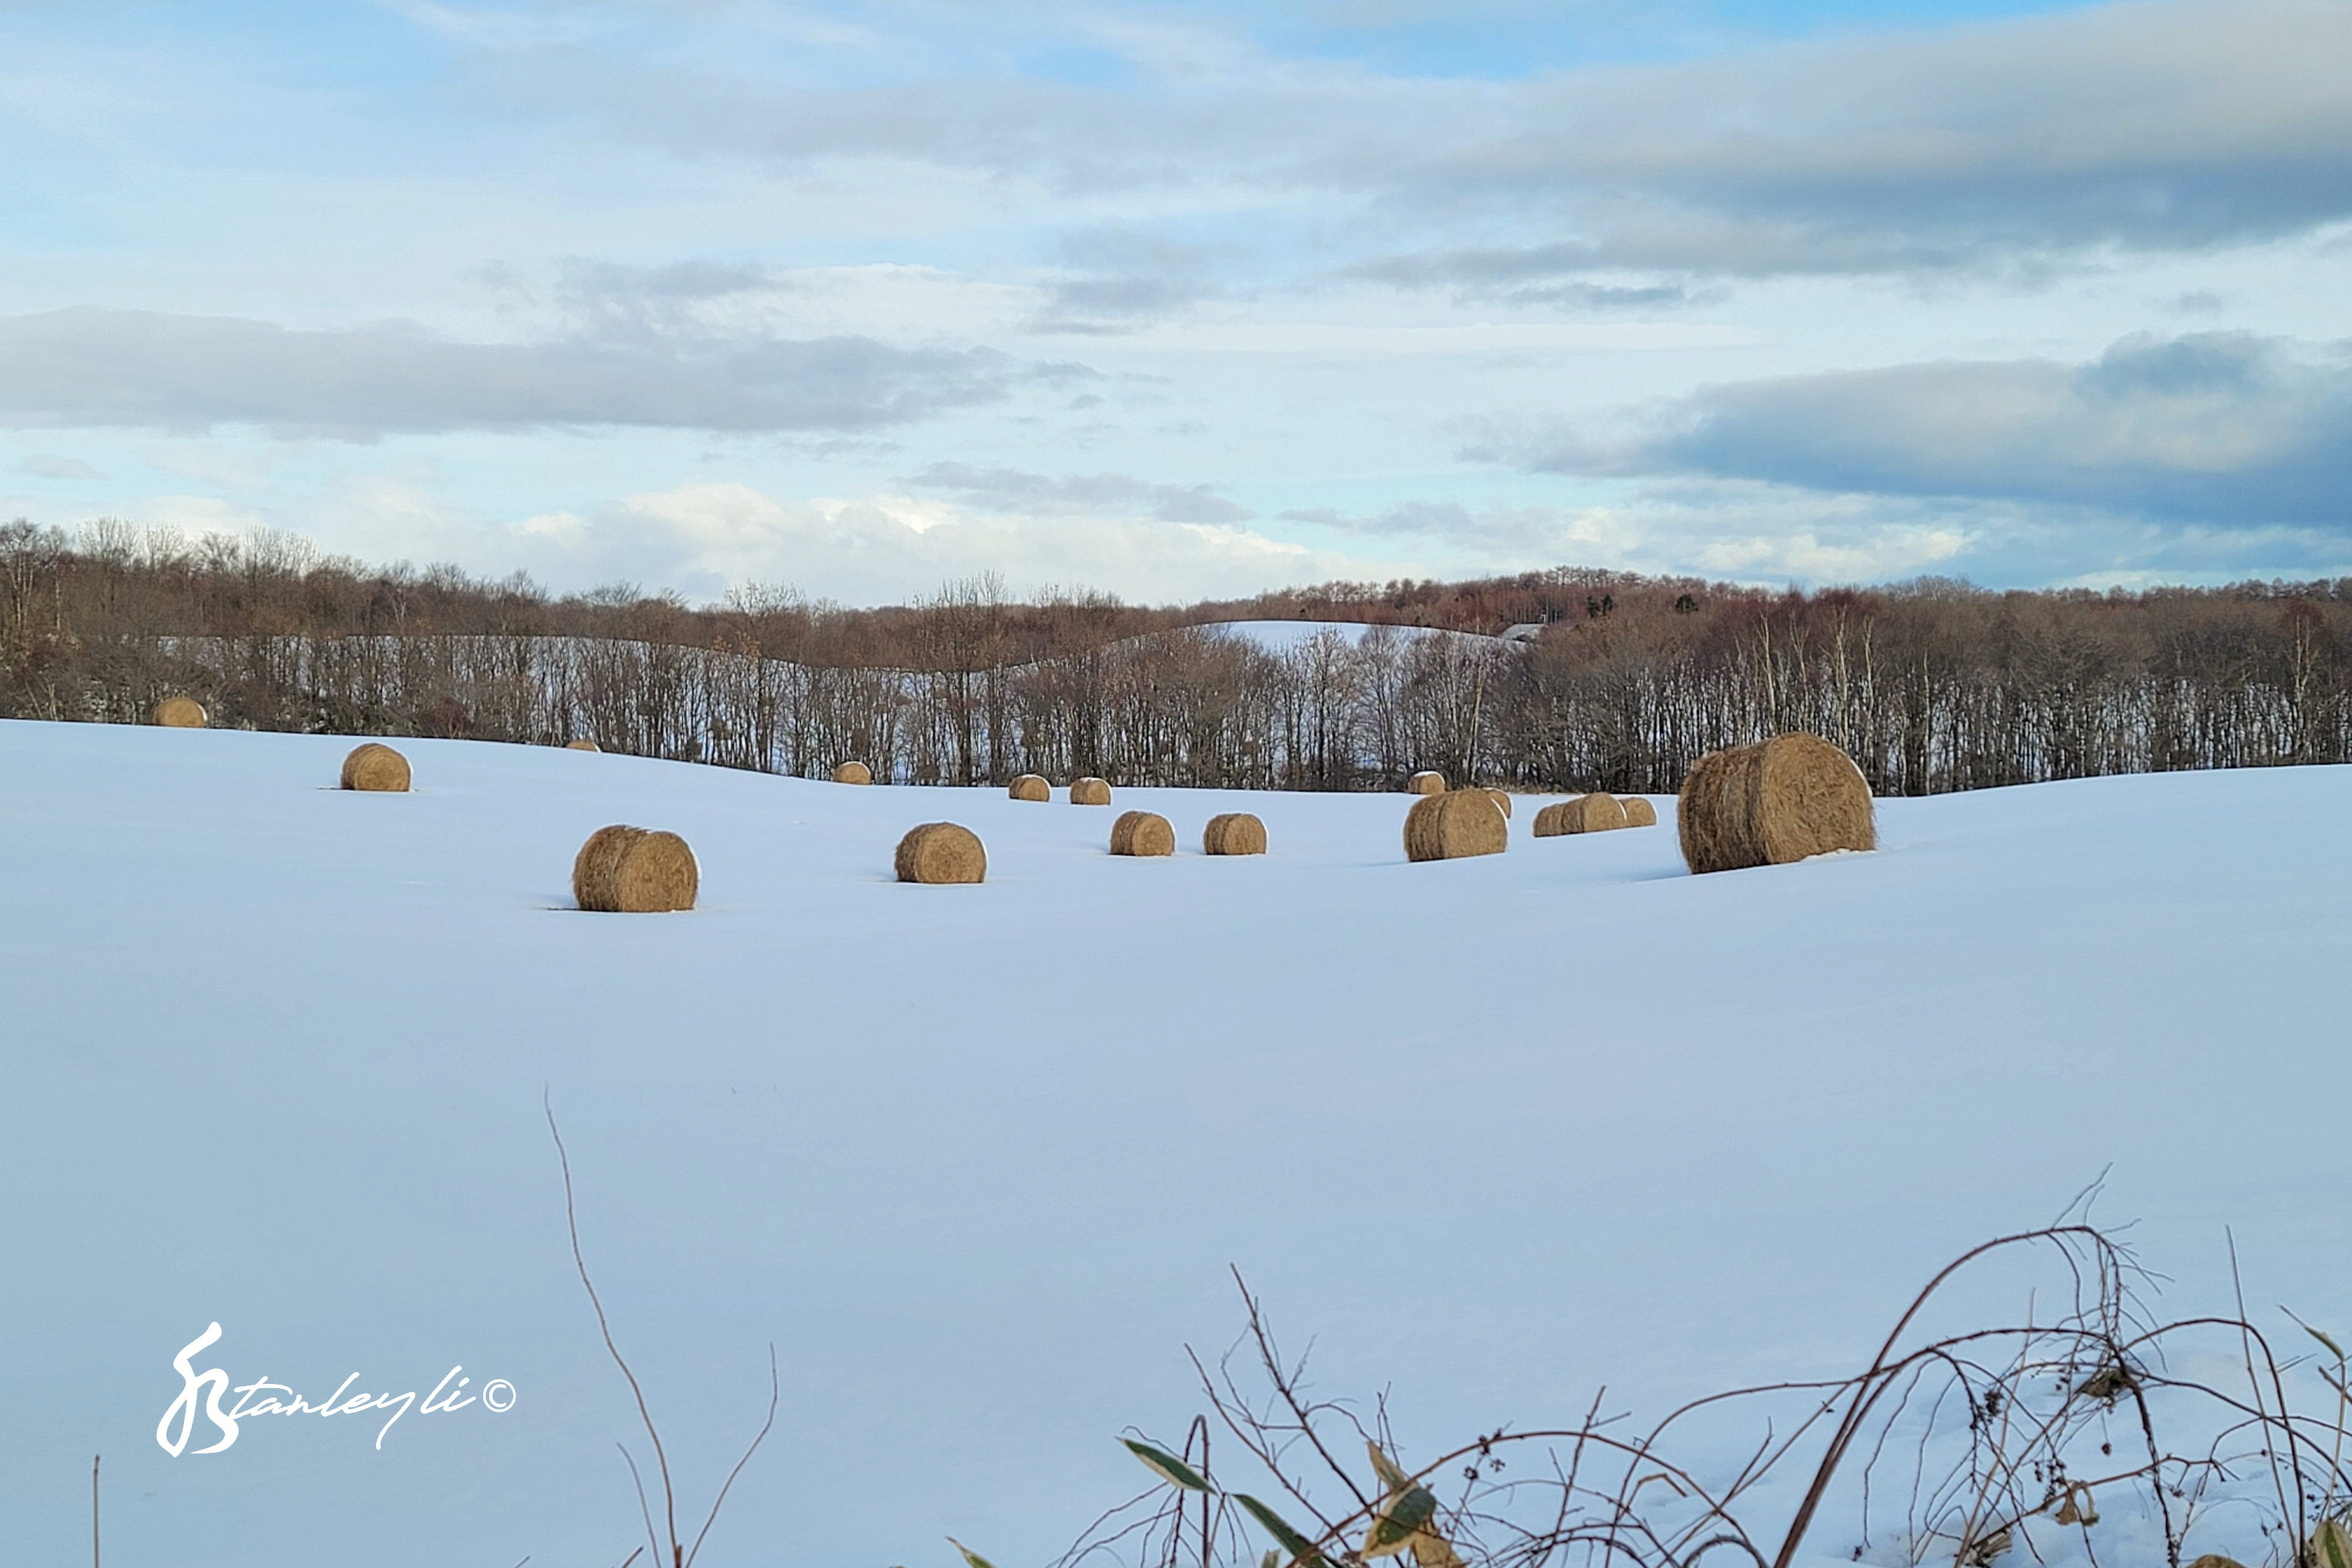 Hay bales sat out in a snowy field. ©️ Stanley Li